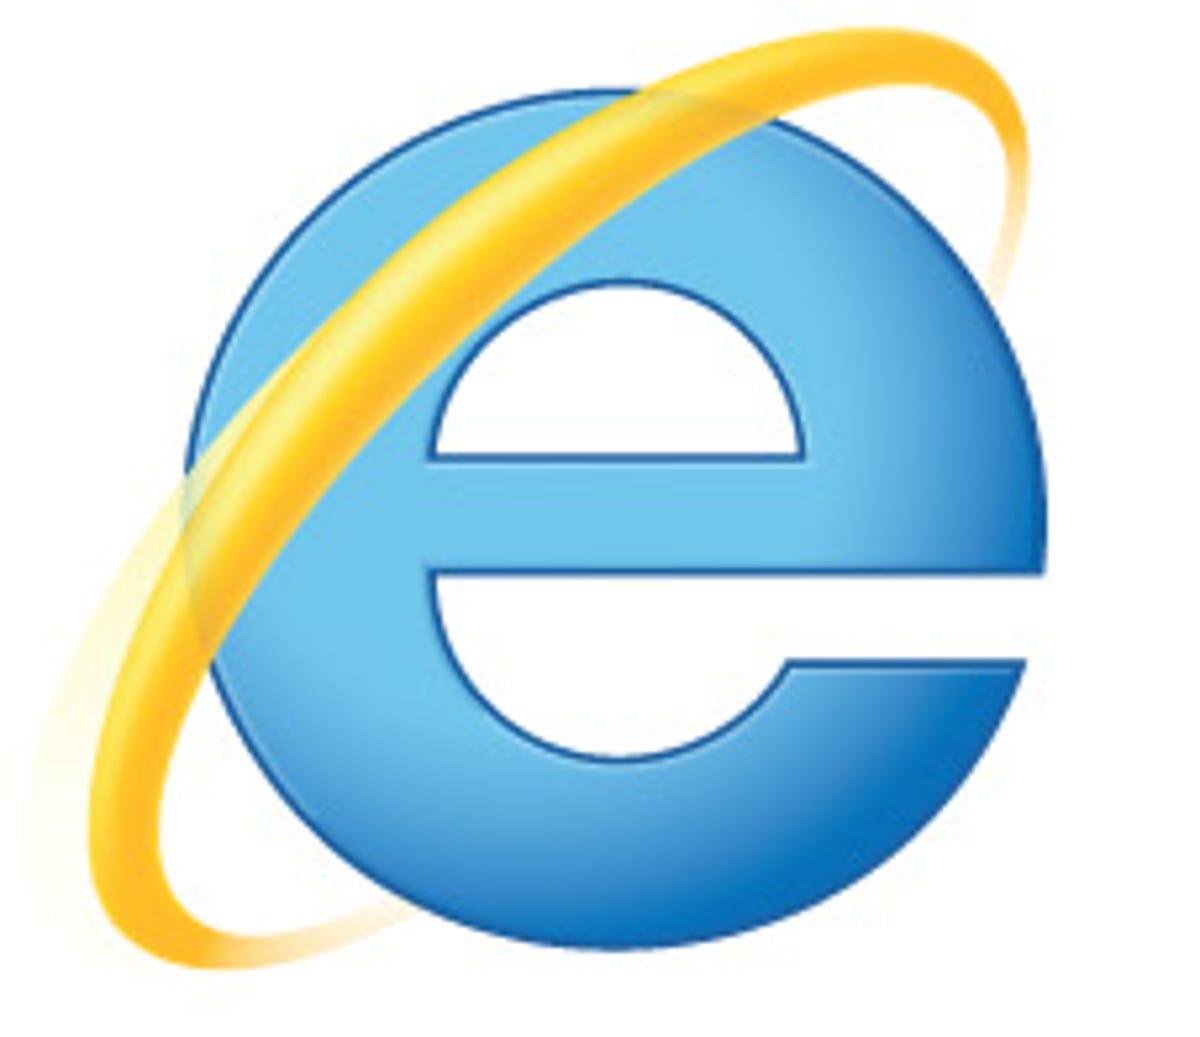 Microsoft IE9 logo